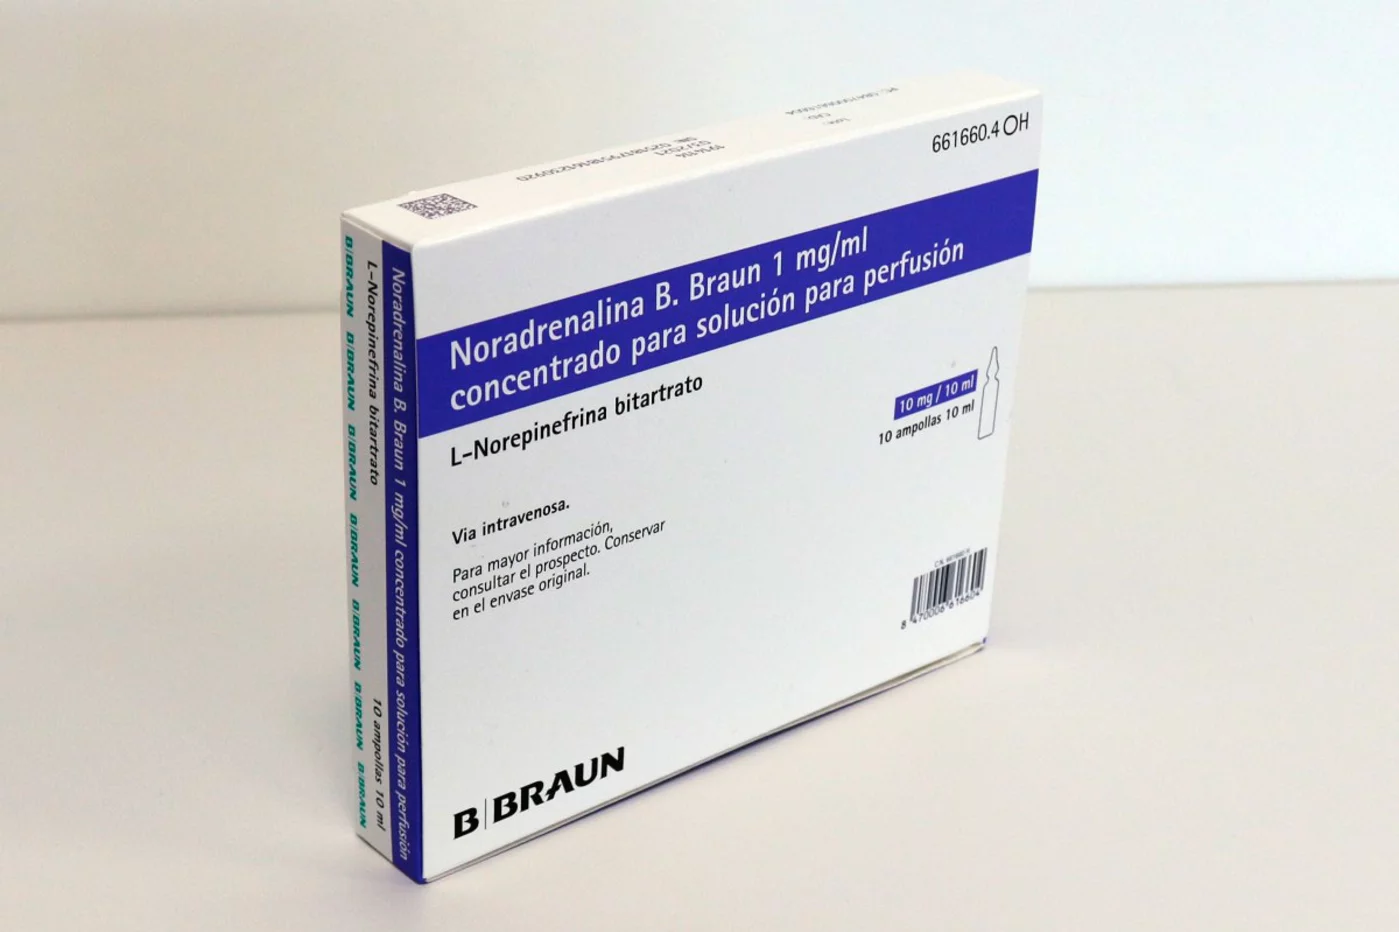 Noradrenalina B. Braun es uno de los medicamentos afectados por el cambio.